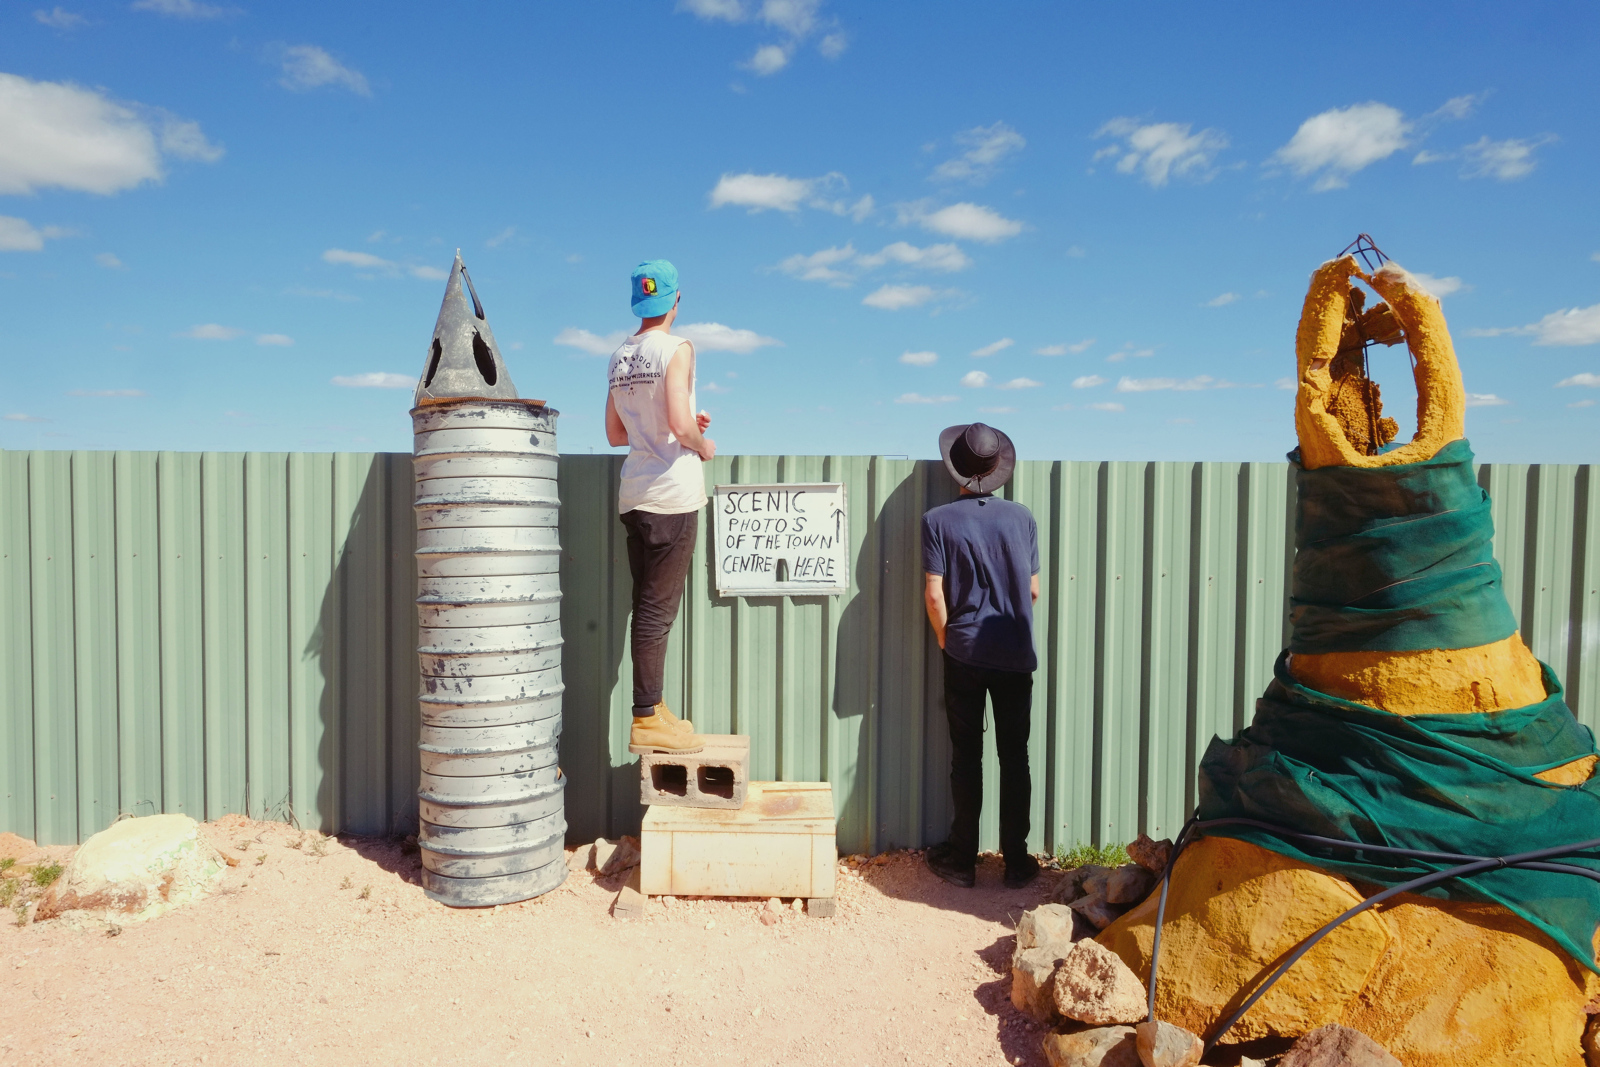 Eine beliebte Route durch das Outback Australiens ist der Explorers Way, der in Adelaide beginnt und den Kontinent bis in den Norden durchzieht. Eine seiner Stationen ist Coober Pedy, das mitten in der ausge-dörrten Mondlandschaft des südaustralischen Outback liegt. 